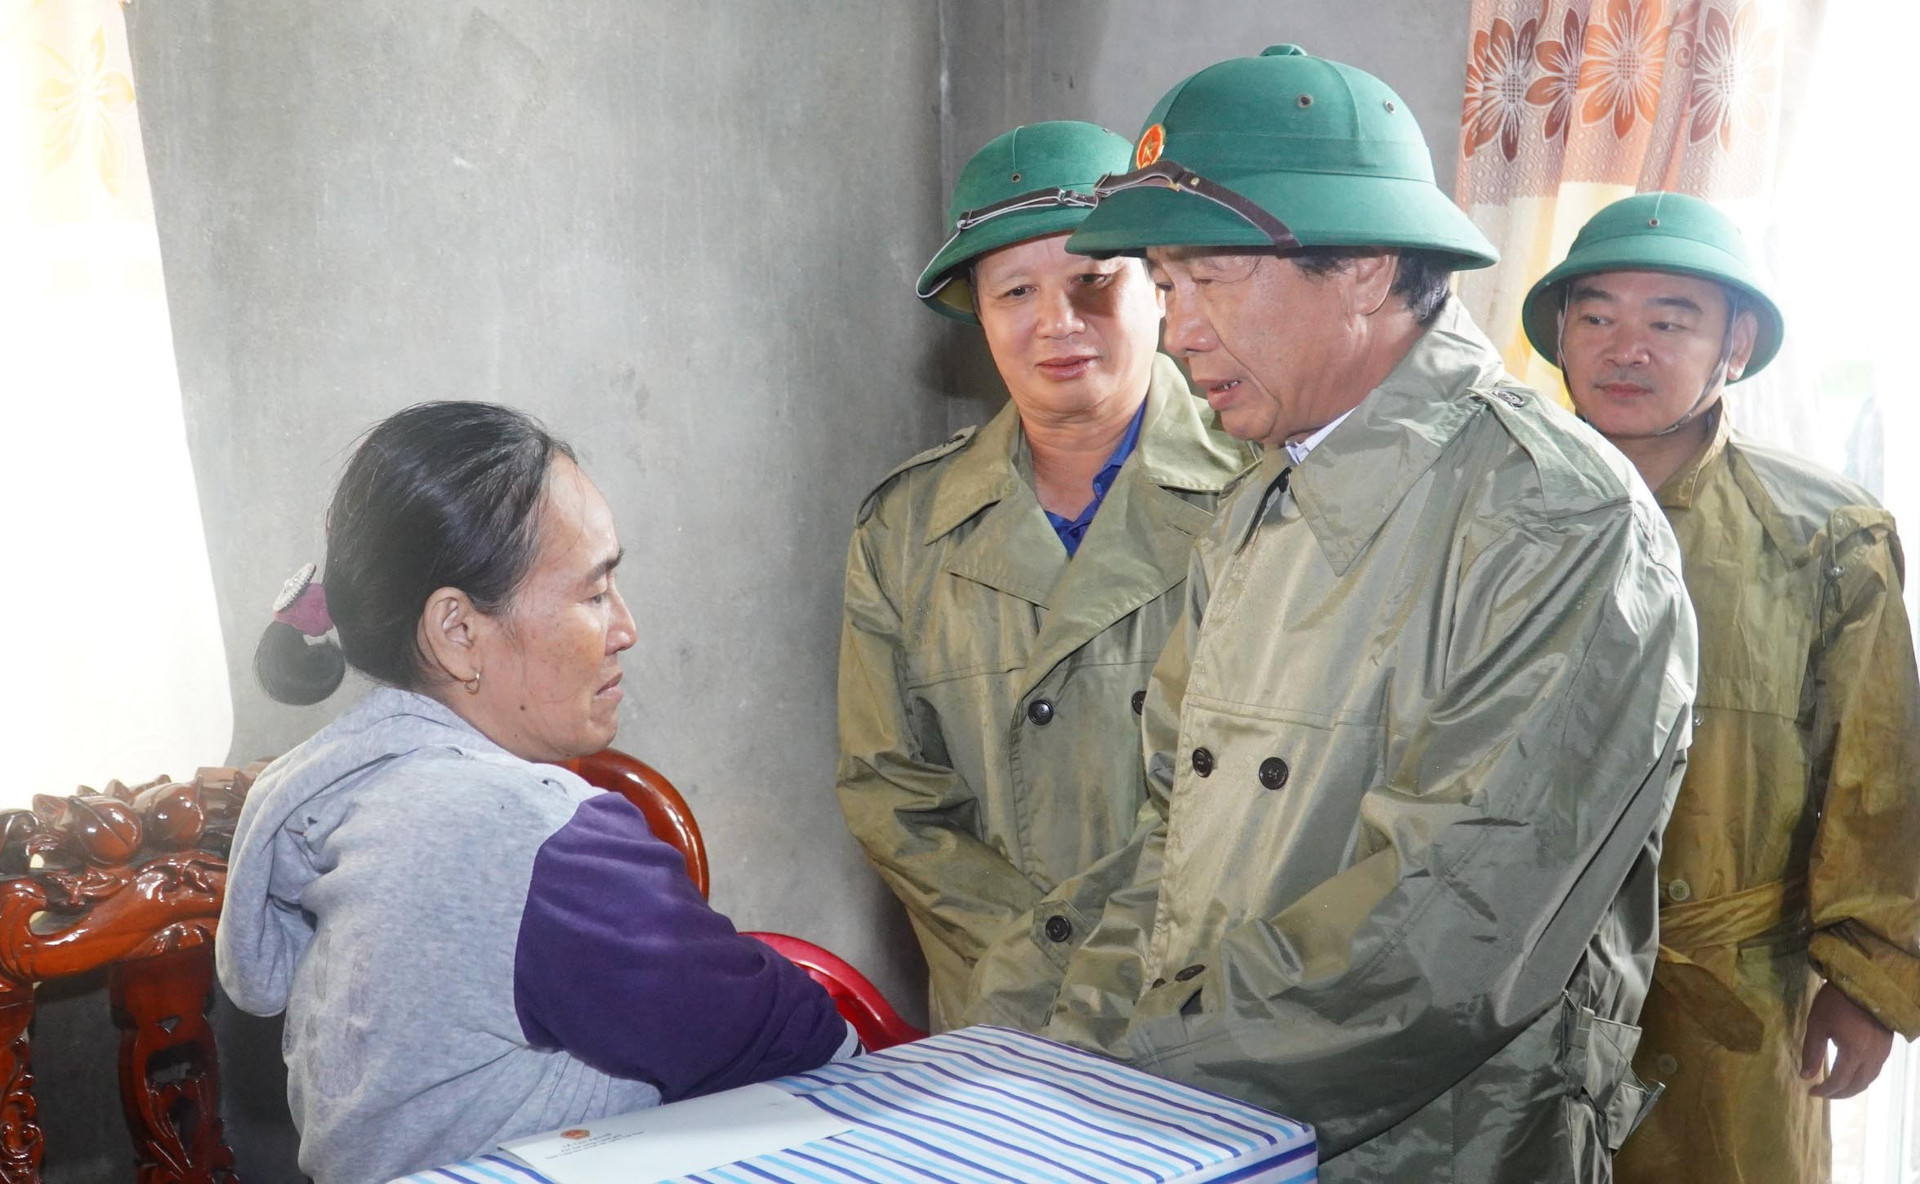 Phó Thủ tướng Lê Văn Thành thăm người dân vùng lũ và kiểm tra sạt lở ở Thừa Thiên – Huế